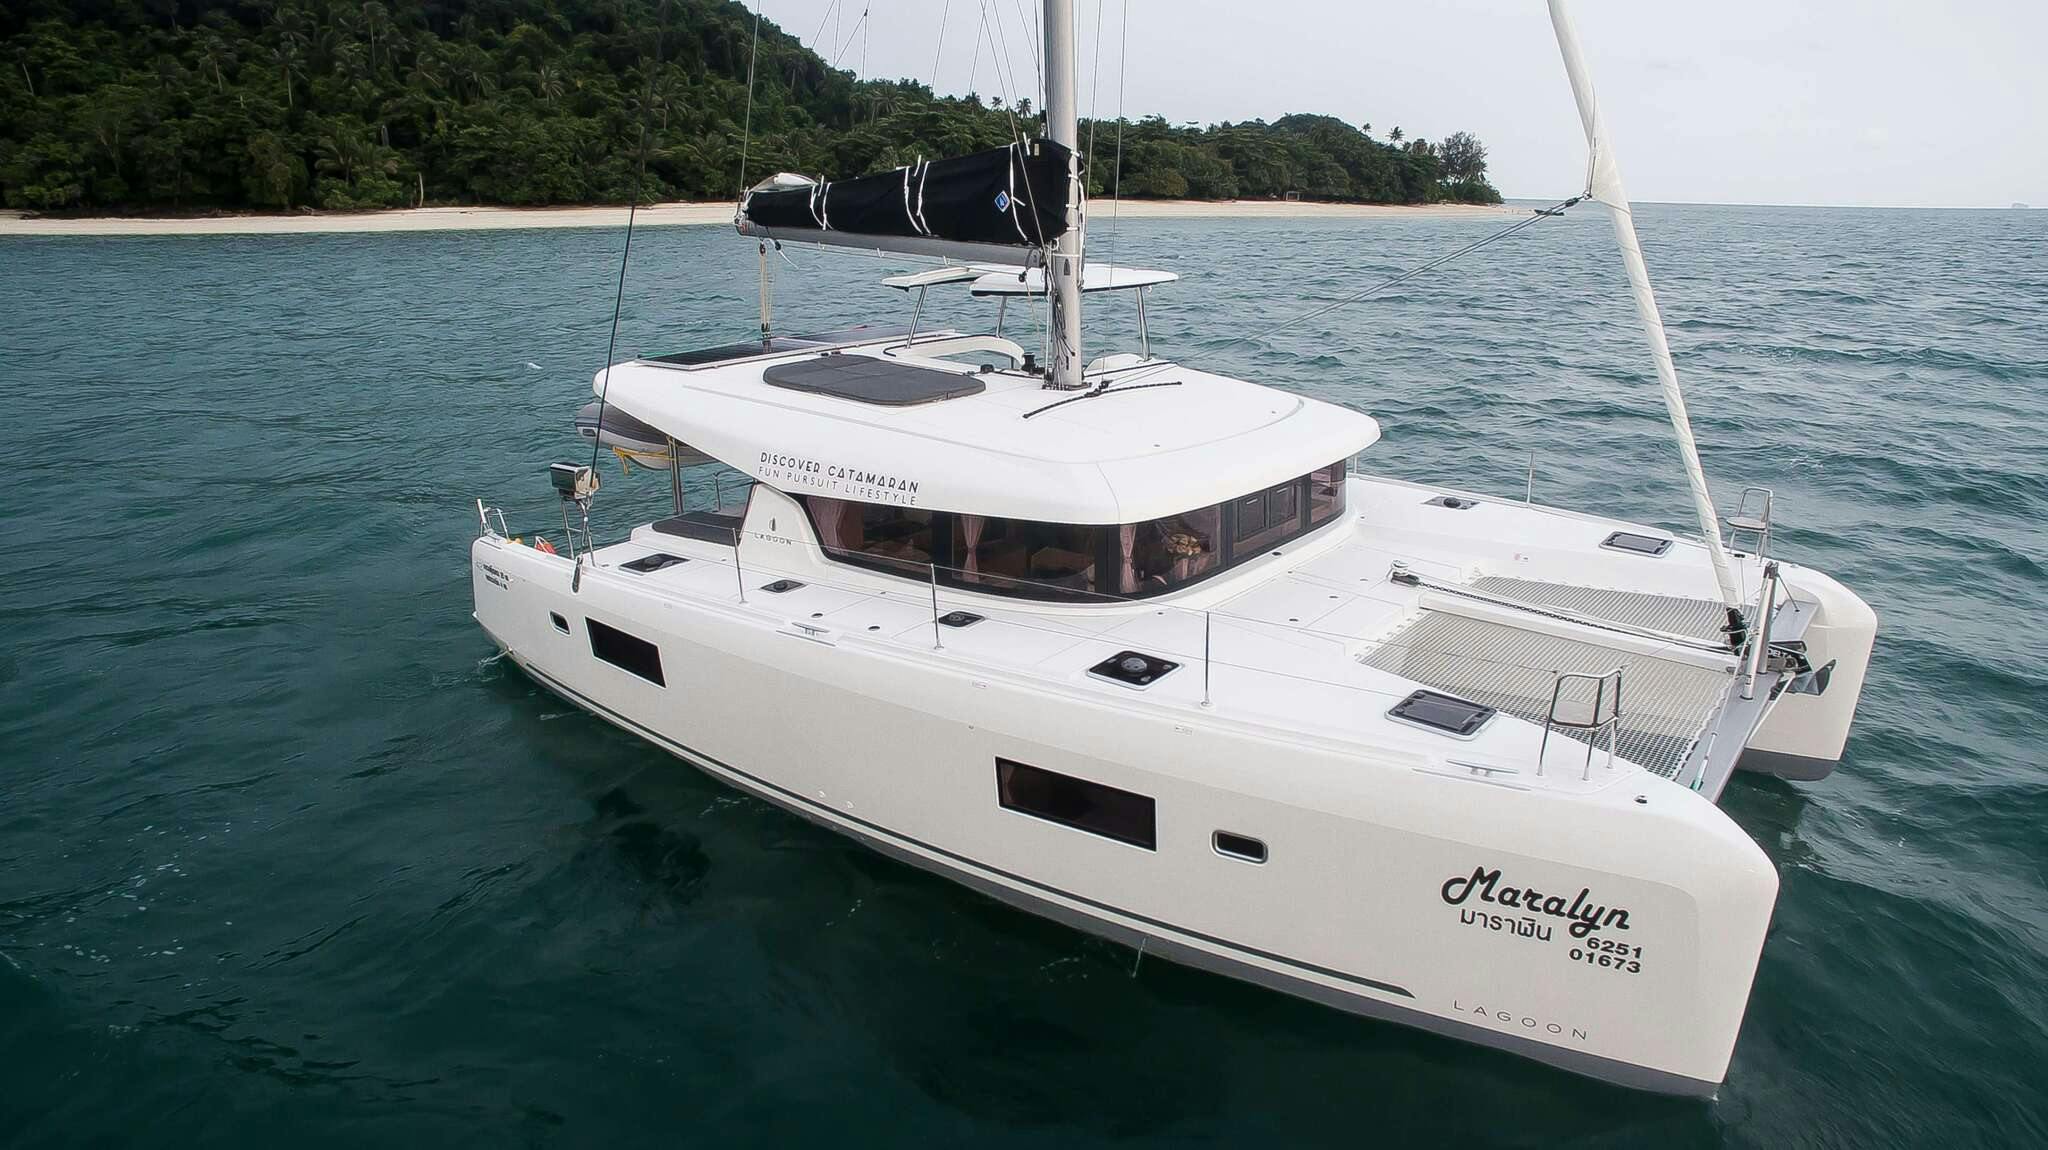 Lagoon 42 - Yacht Charter Phuket & Boat hire in Thailand Phuket Ao Po Grand Marina 1